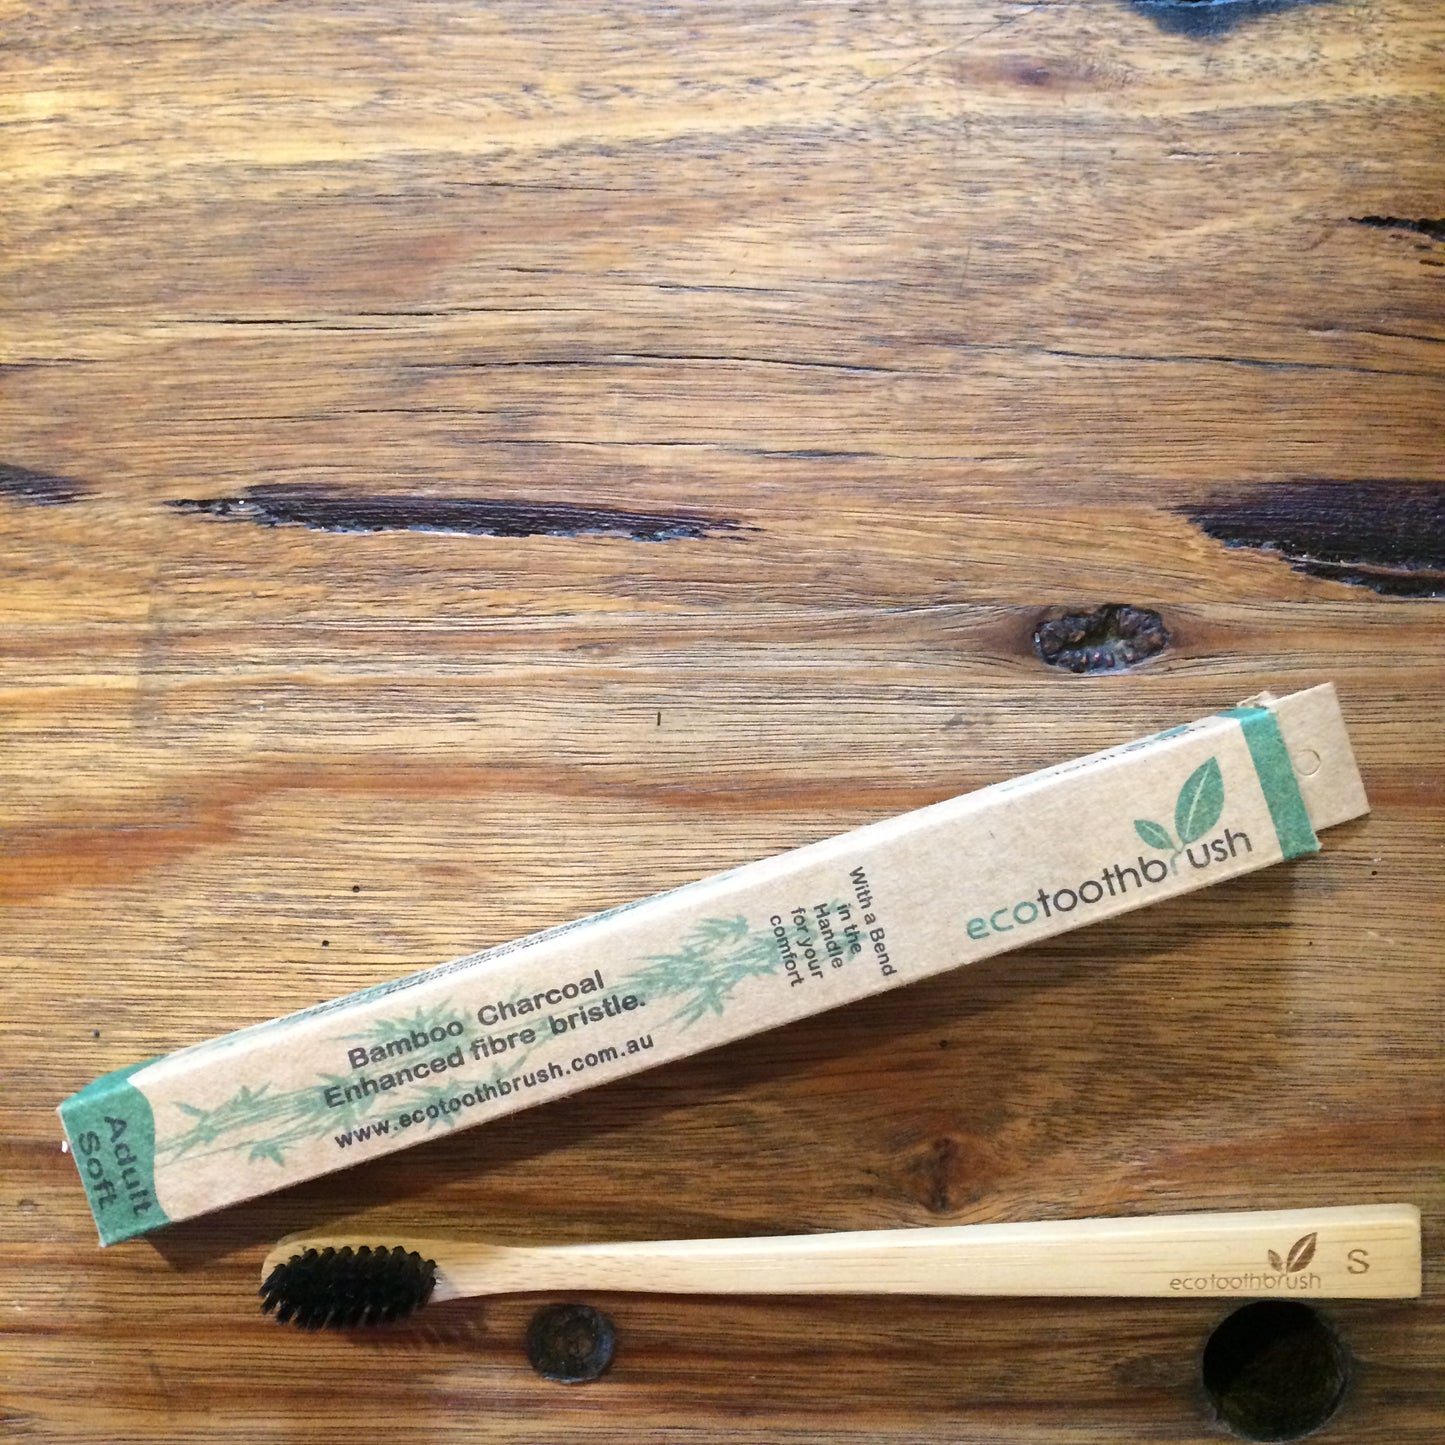 MiEco Bamboo Charcoal Bristle Toothbrush